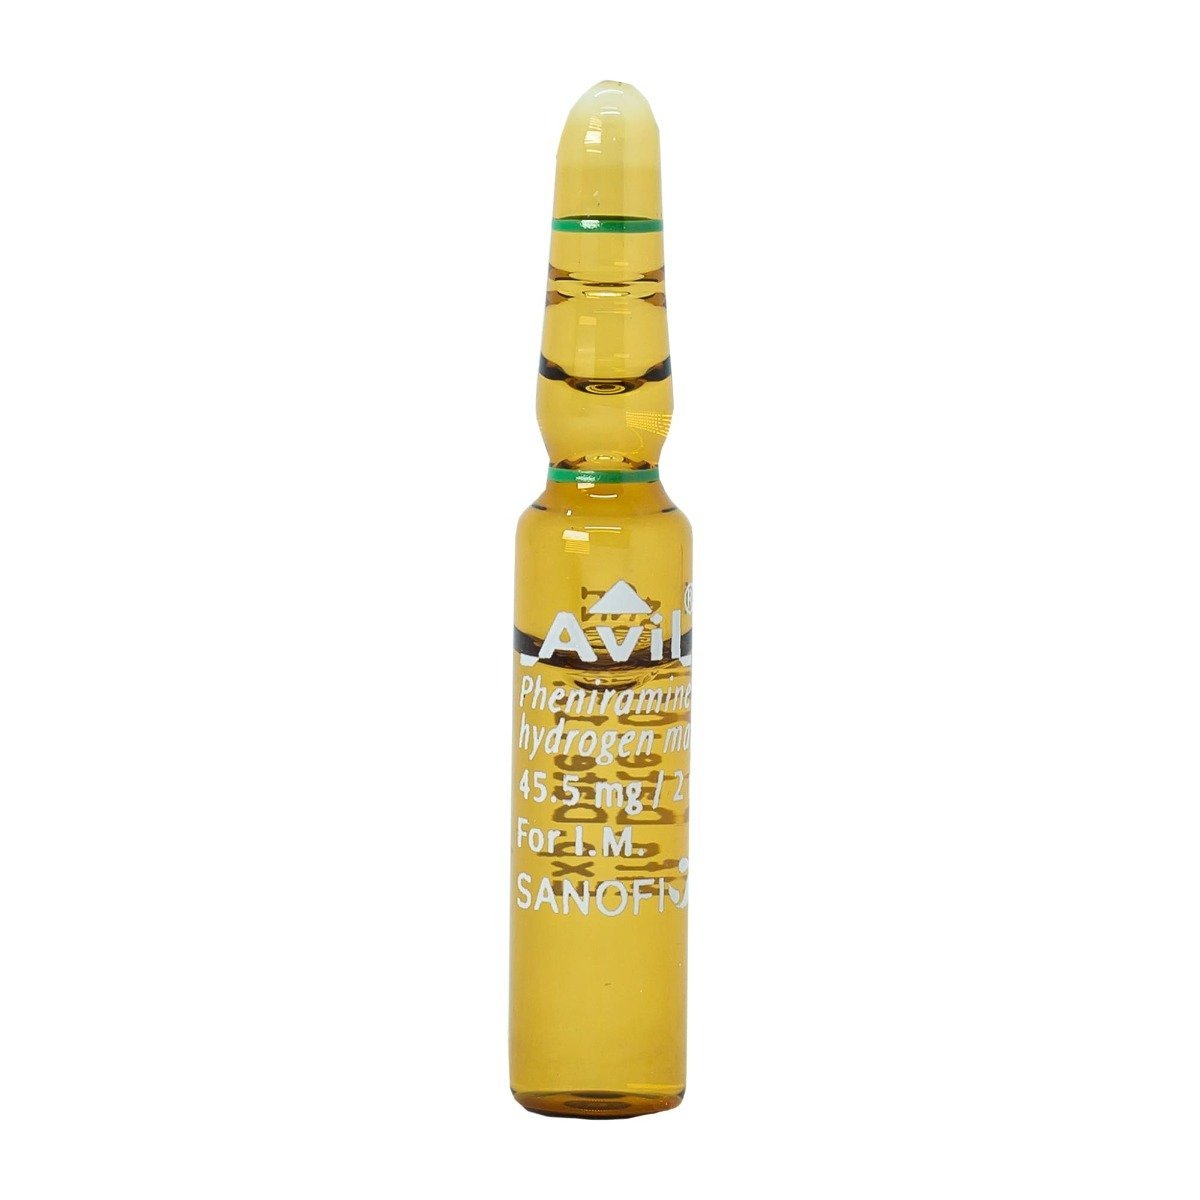 Avil 45.5 mg 2ml - 6 Ampoules - Bloom Pharmacy